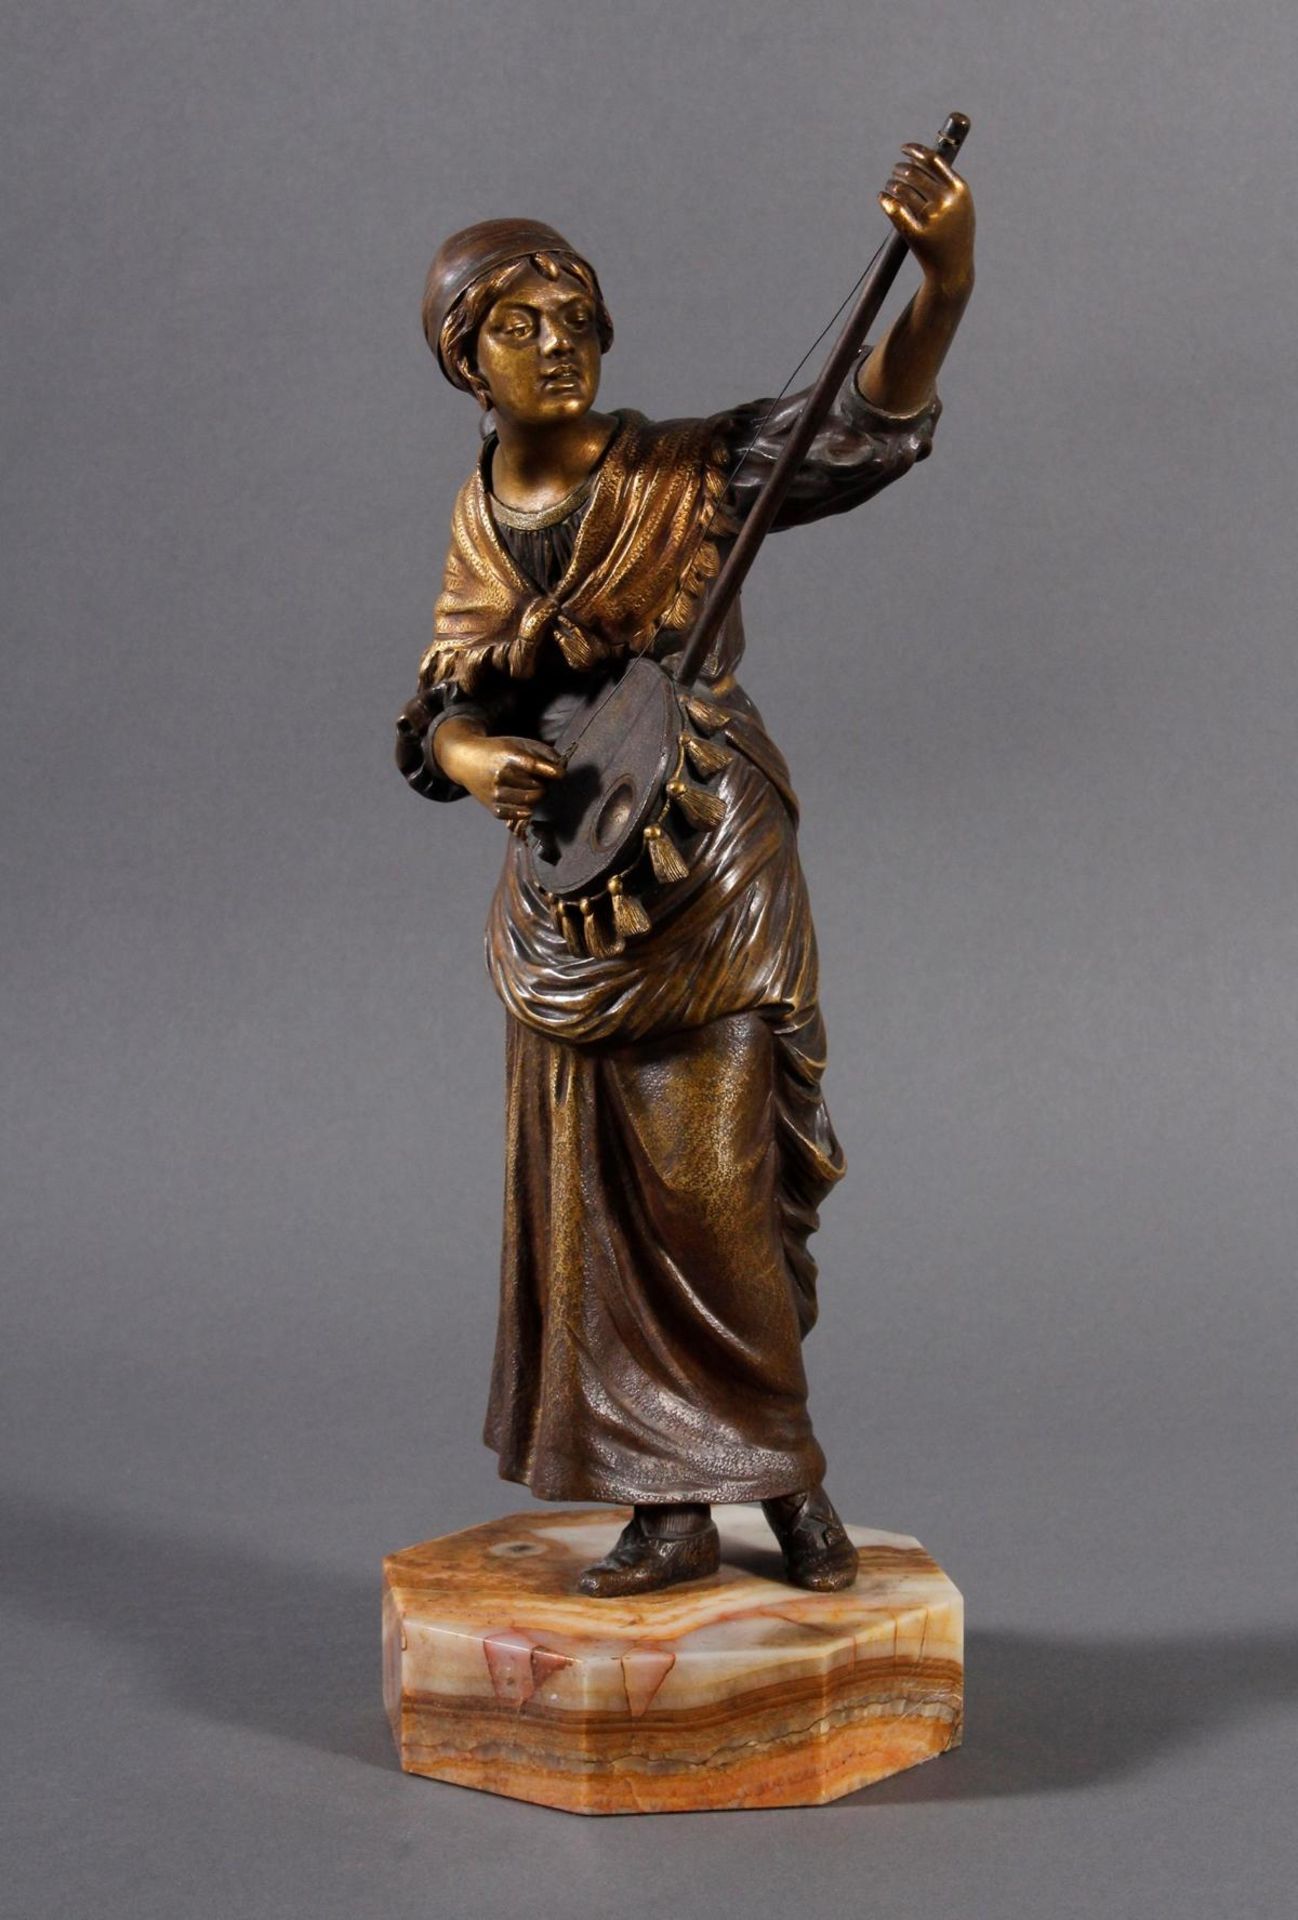 Mandolinenspielerin von Dominic Alonso (1885-1926)Sehr fein gearbeitete Bronze, patiniert und